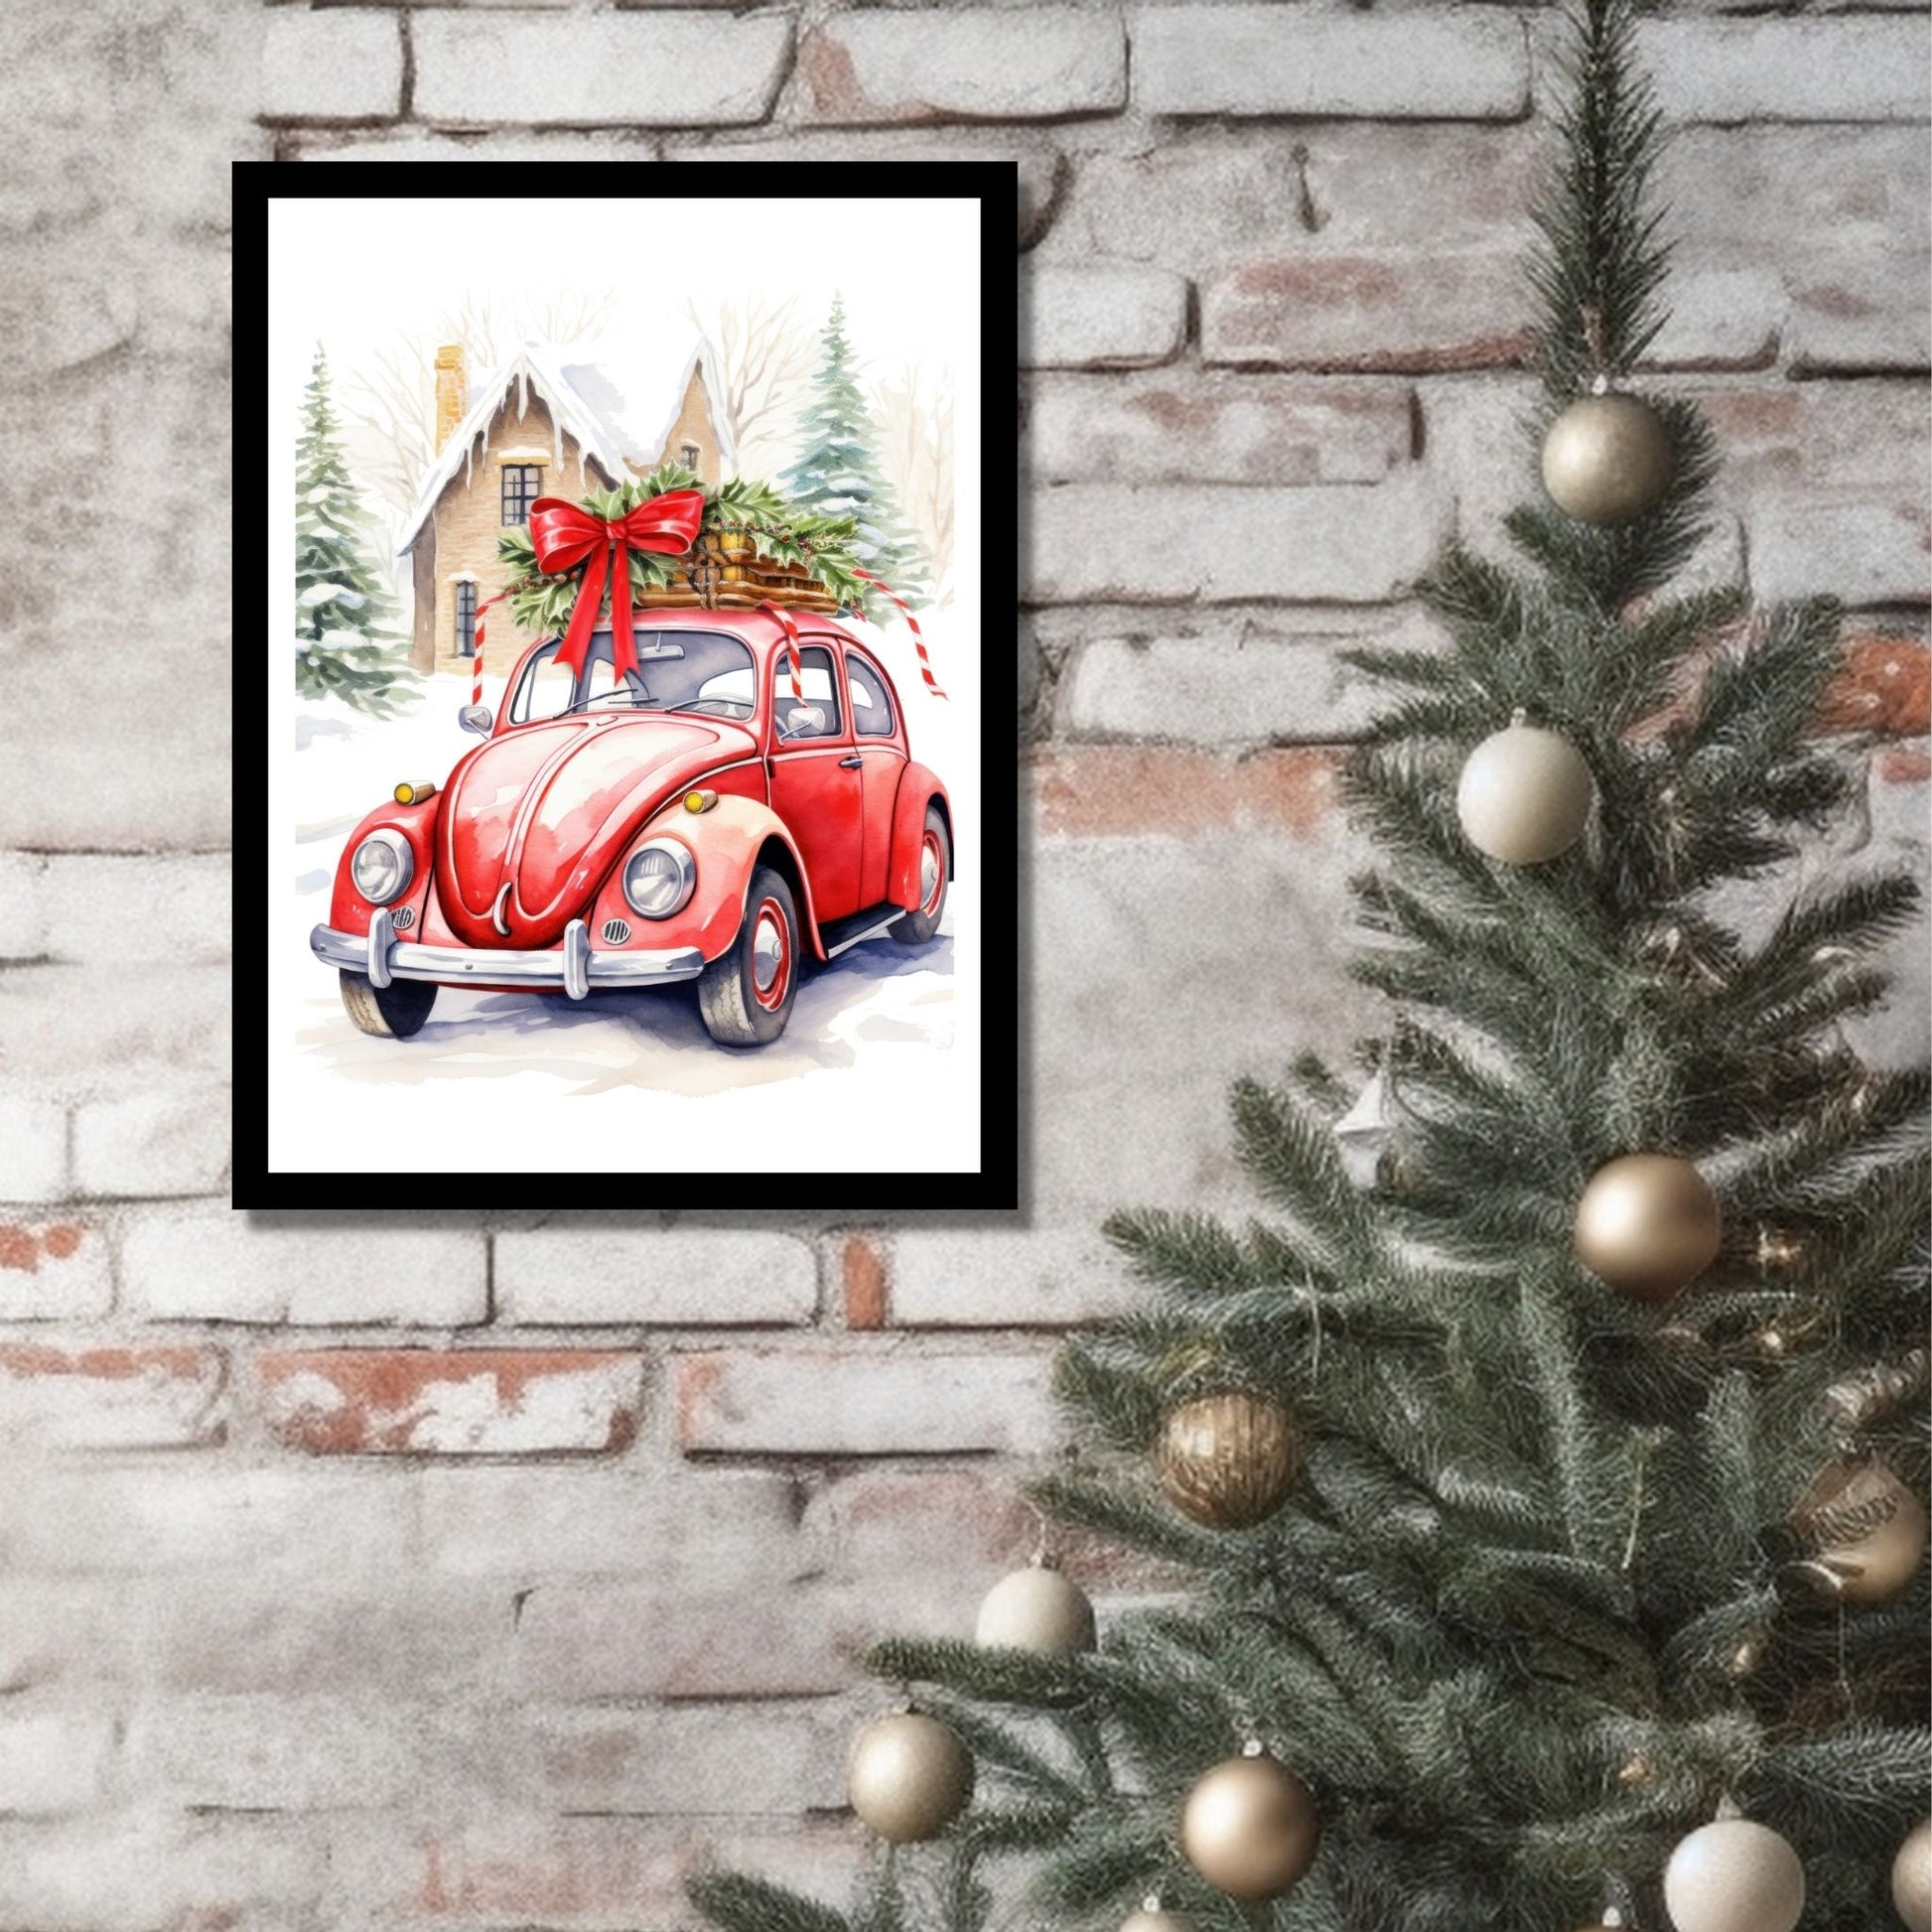 Plakat og lerret med grafisk julemotiv av gammel, rød volkswagen boble. Bilen står foran et hus, og på taket er den lastet med juledekorasjoner. På bildet henger motivet som plakaten i en sort ramme på en murvegg ved siden av et juletre.